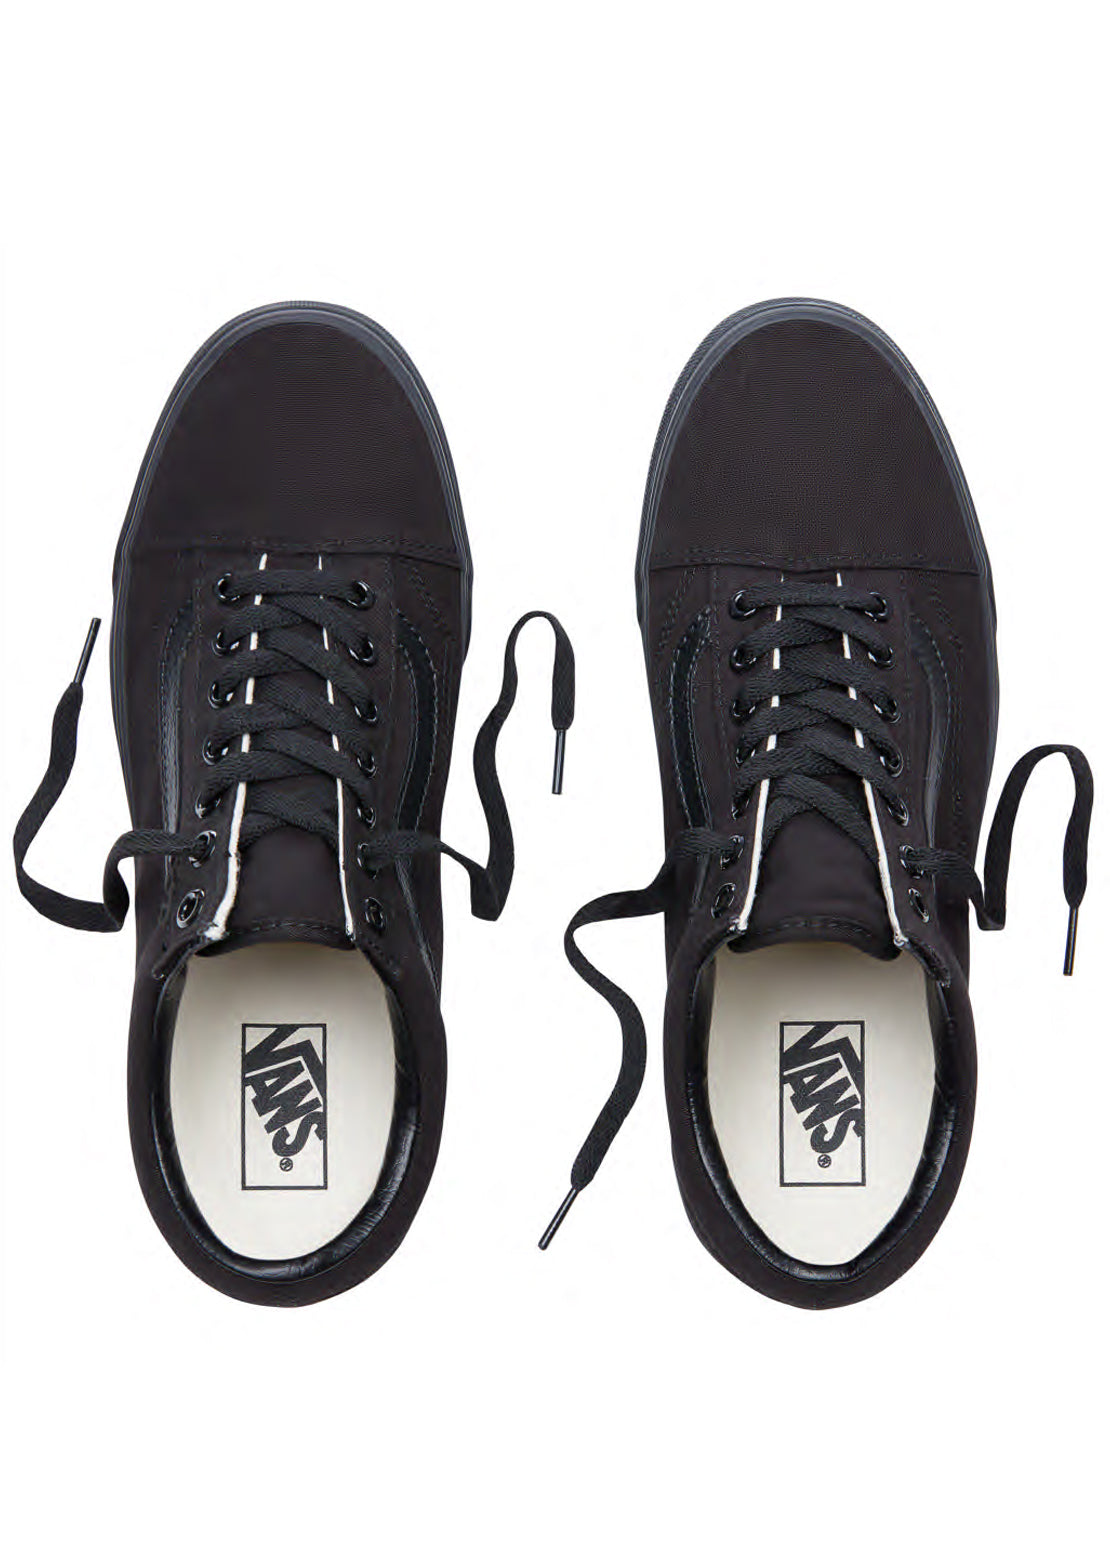 Vans Old Skool Shoes Black/Black